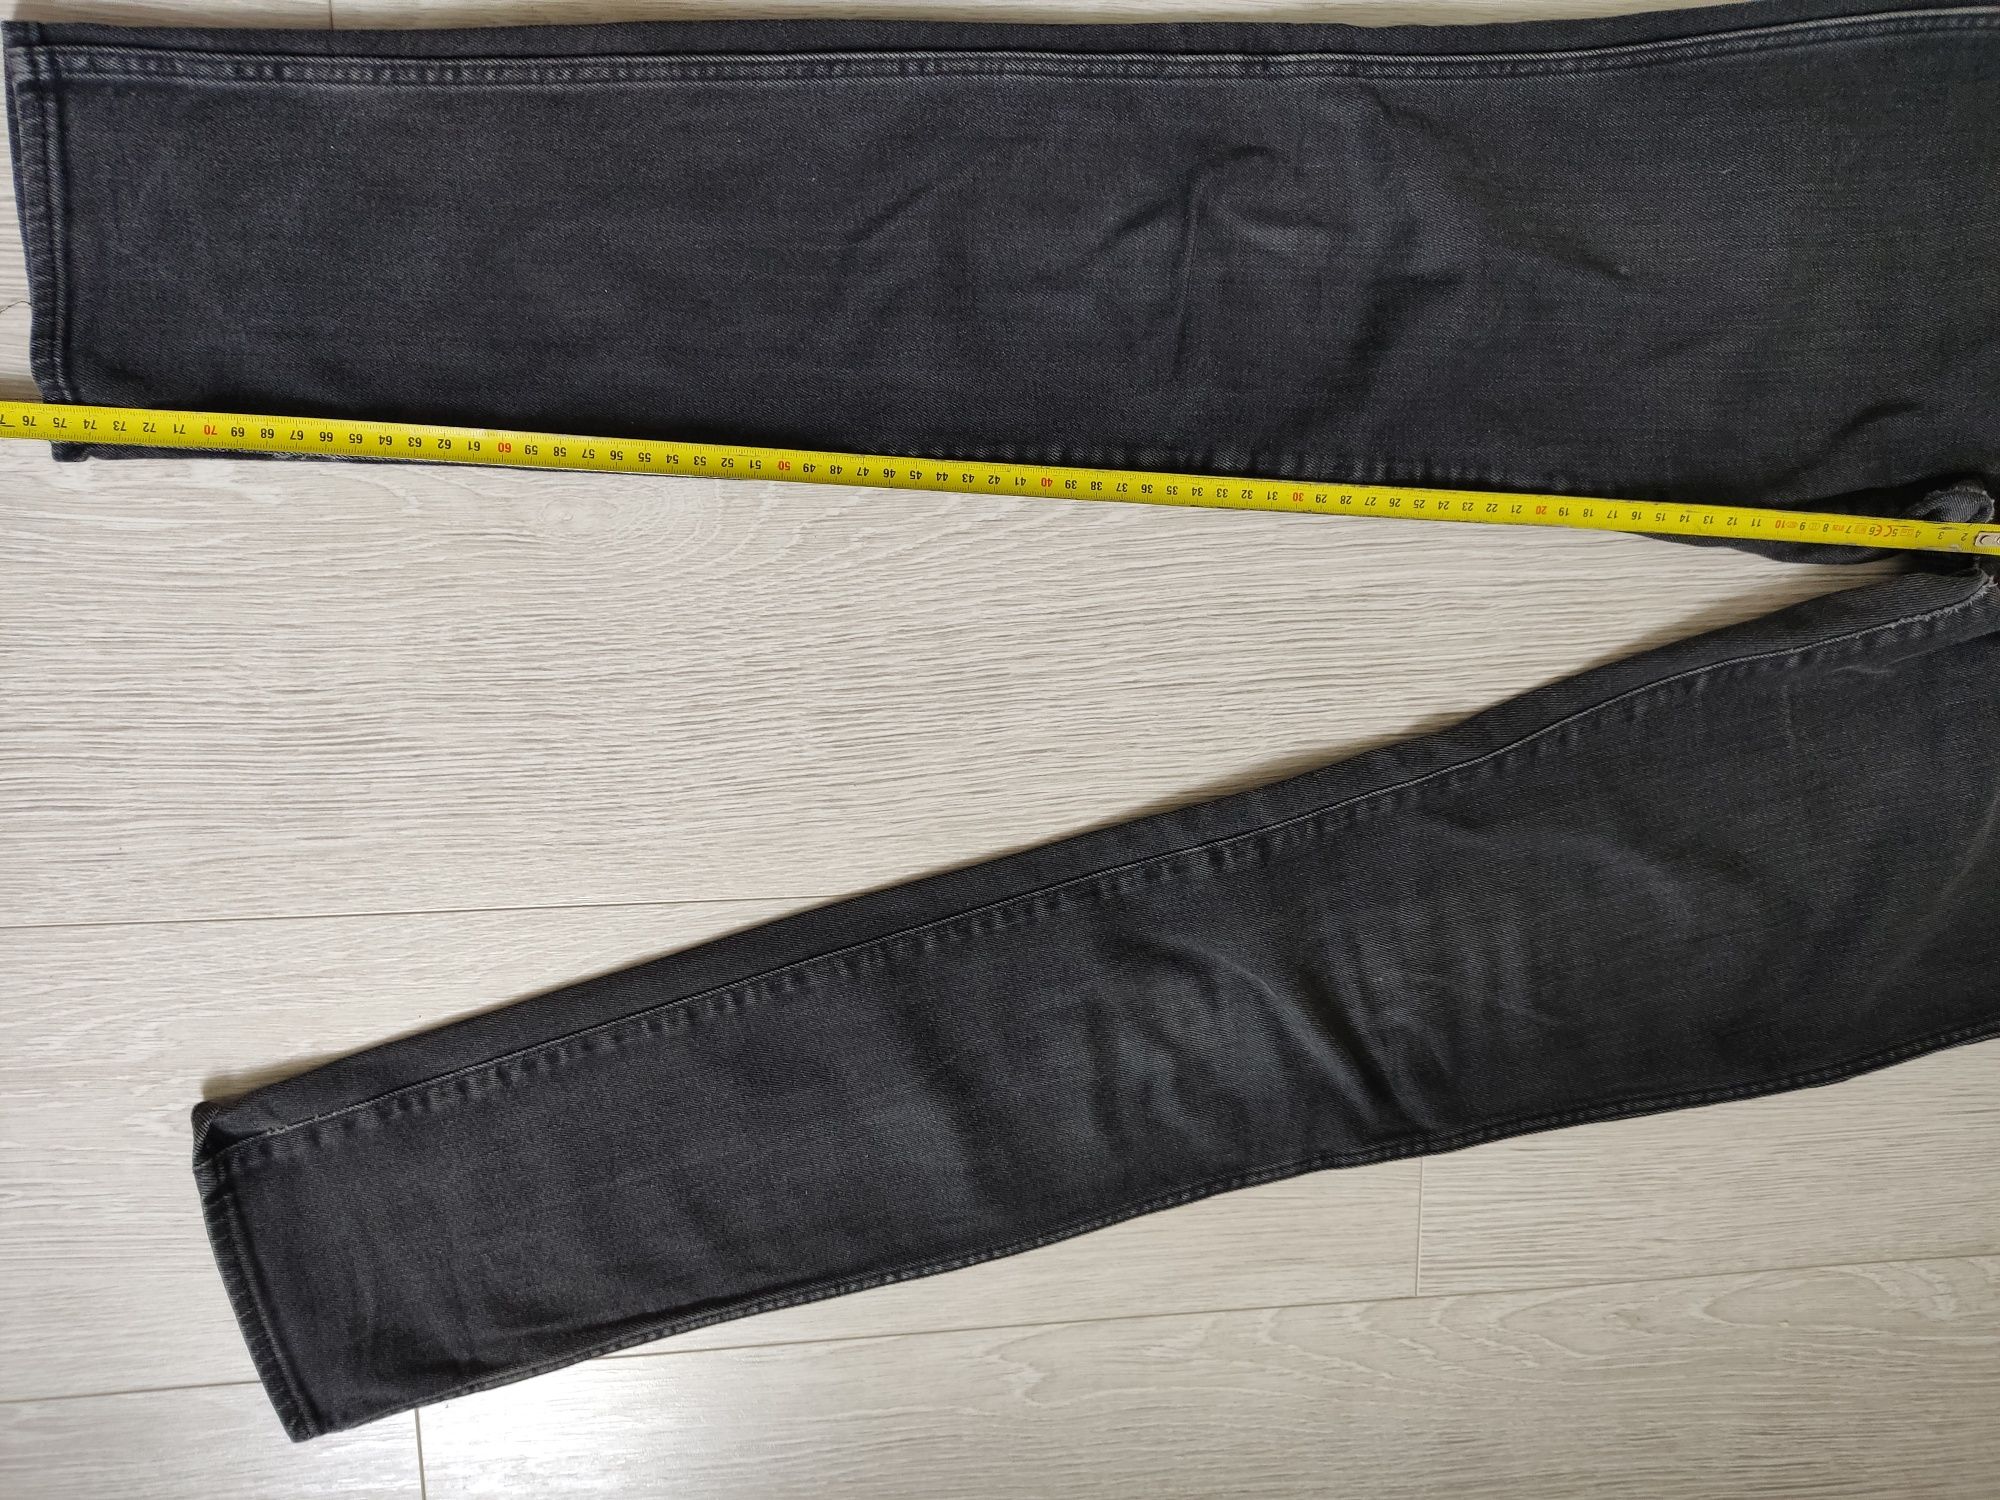 Spodnie jeansy Wrangler 36/38